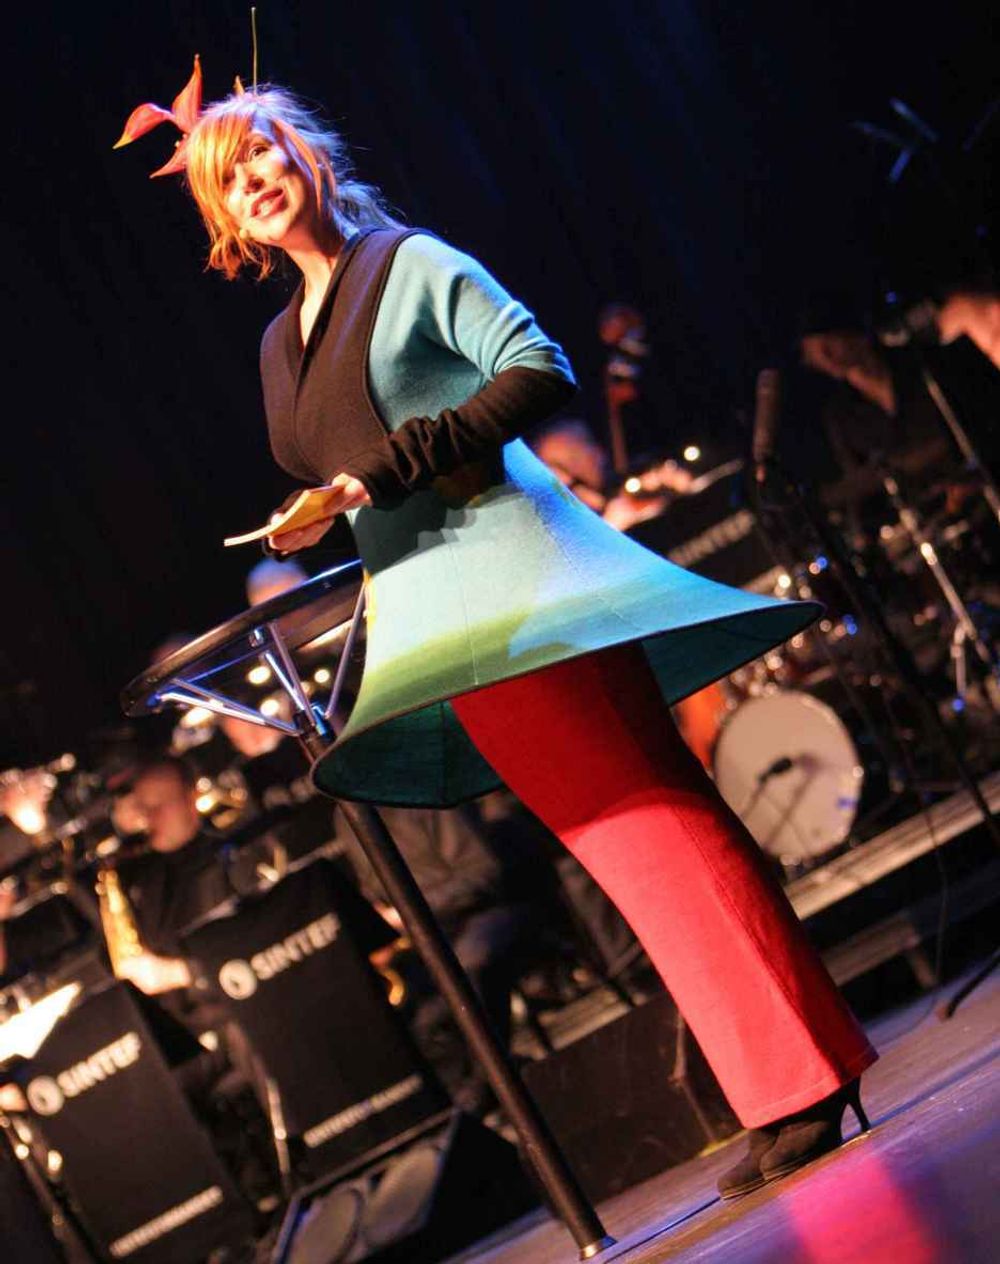 Noe for julebordet? Gry Molvær skiftet kjoleantrekk en rekke ganger under Technoport Awards.